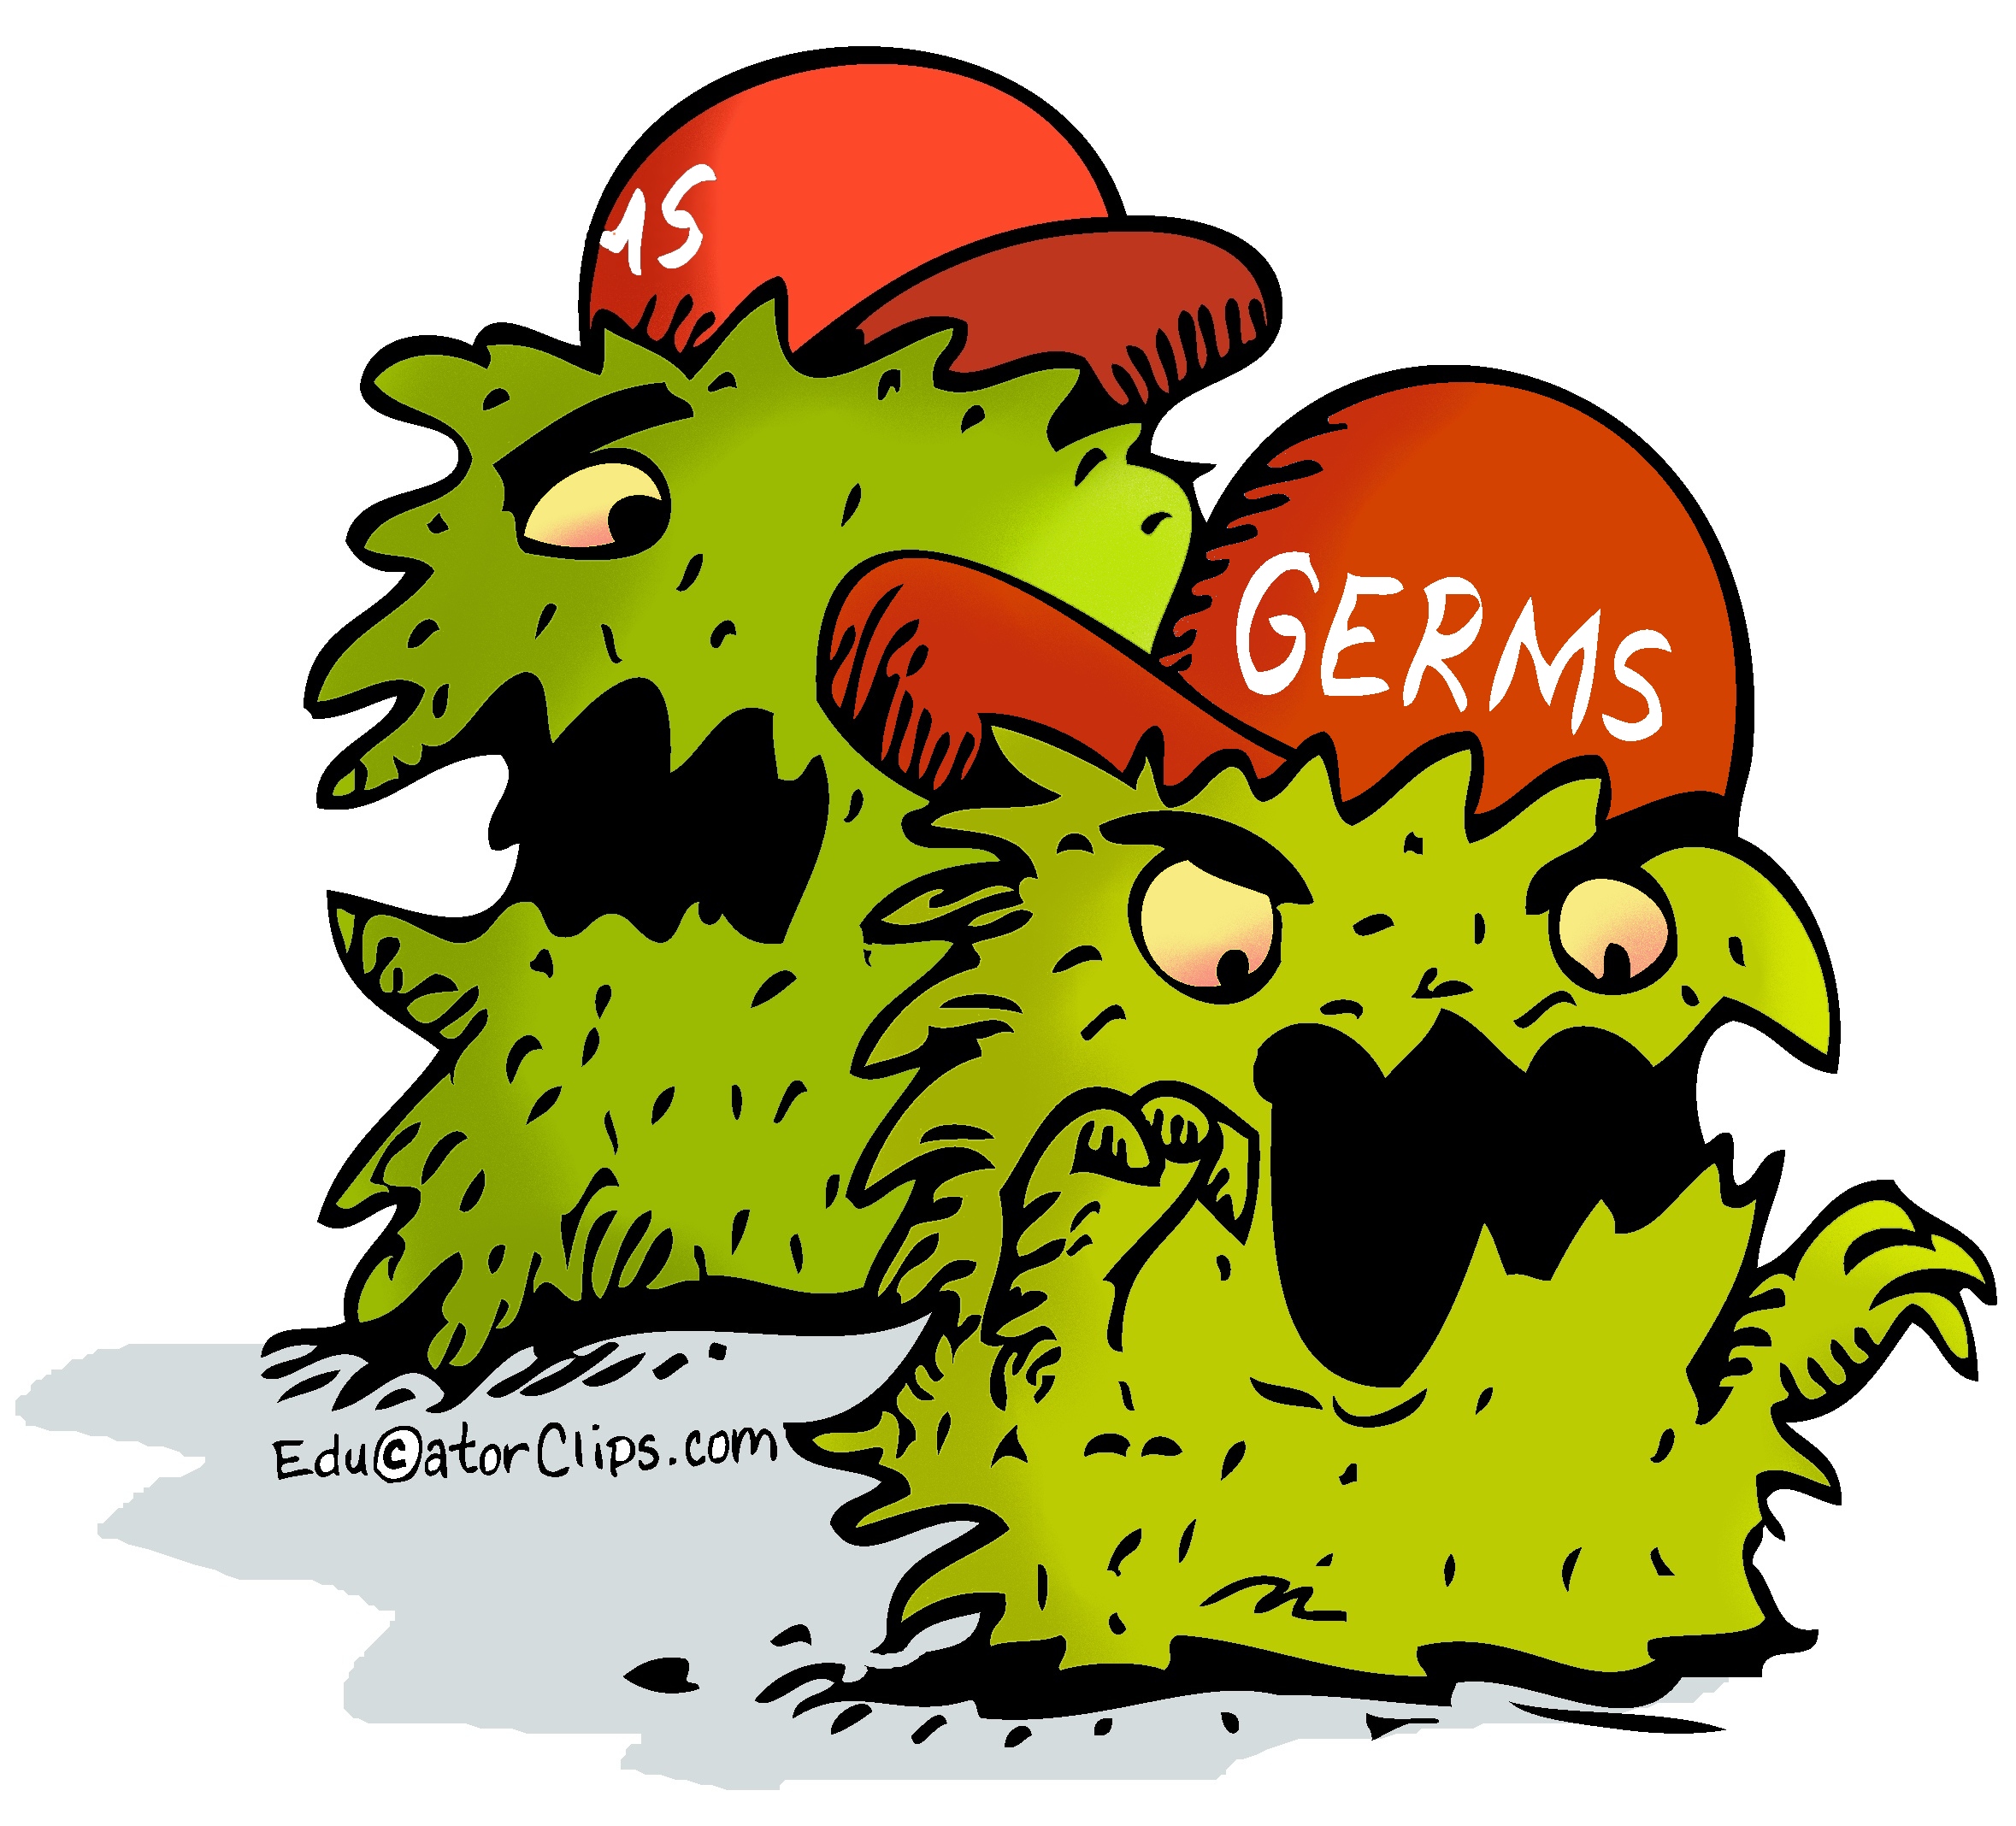 Germs Clip Art,pathogens clip art,illness